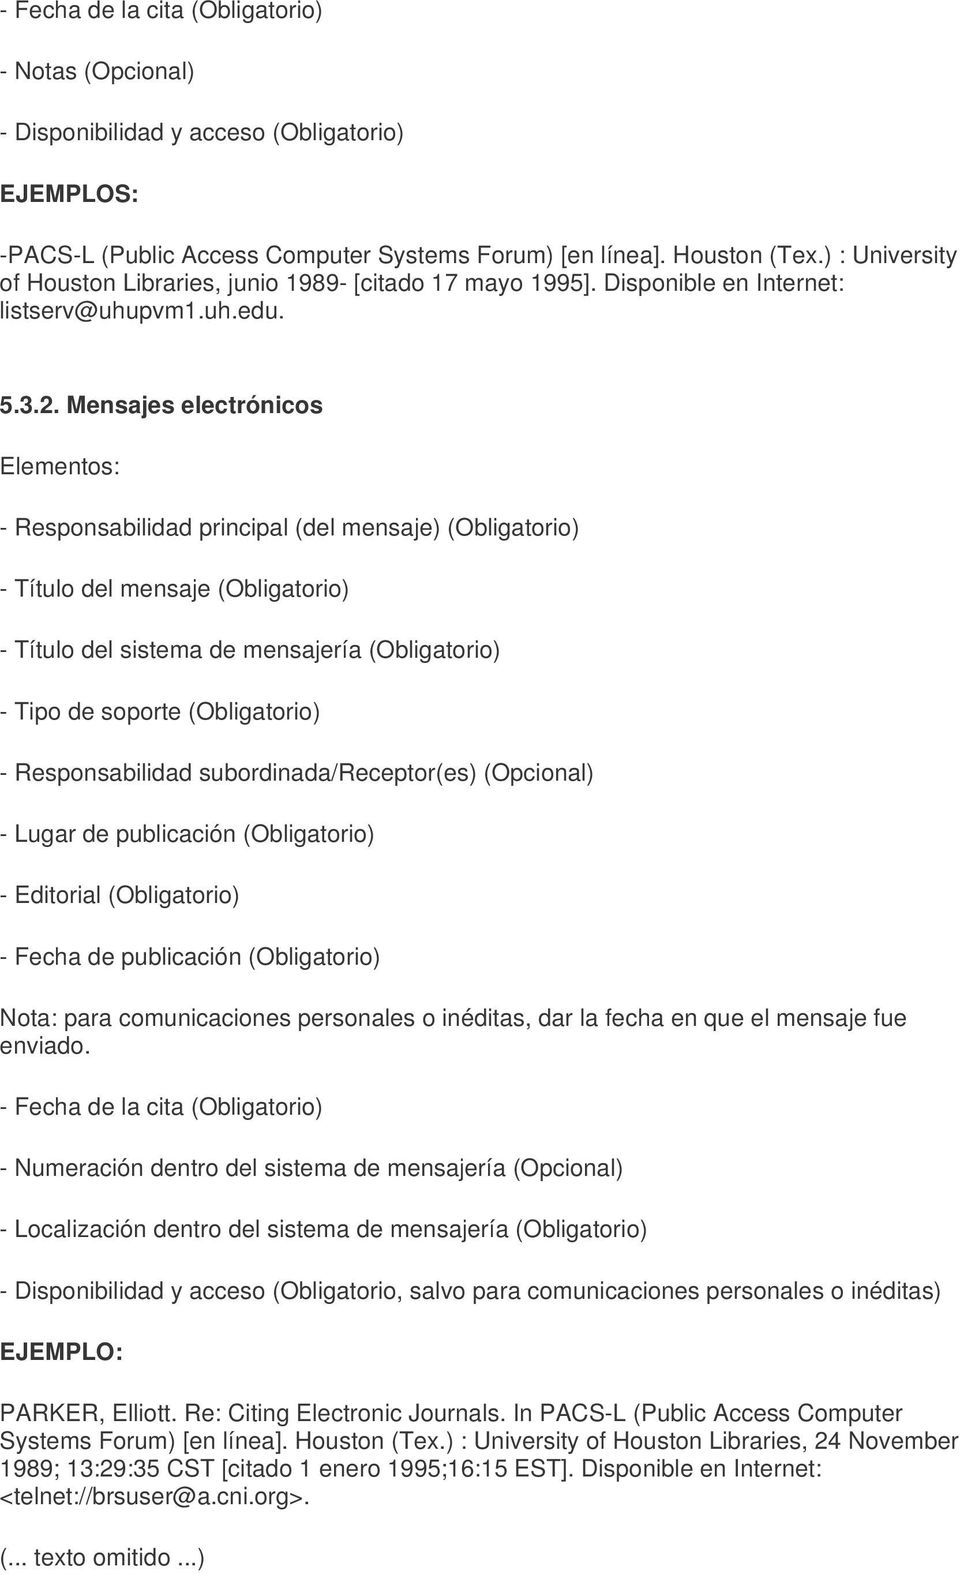 Mensajes electrónicos Elementos: - Responsabilidad principal (del mensaje) (Obligatorio) - Título del mensaje (Obligatorio) - Título del sistema de mensajería (Obligatorio) - Tipo de soporte